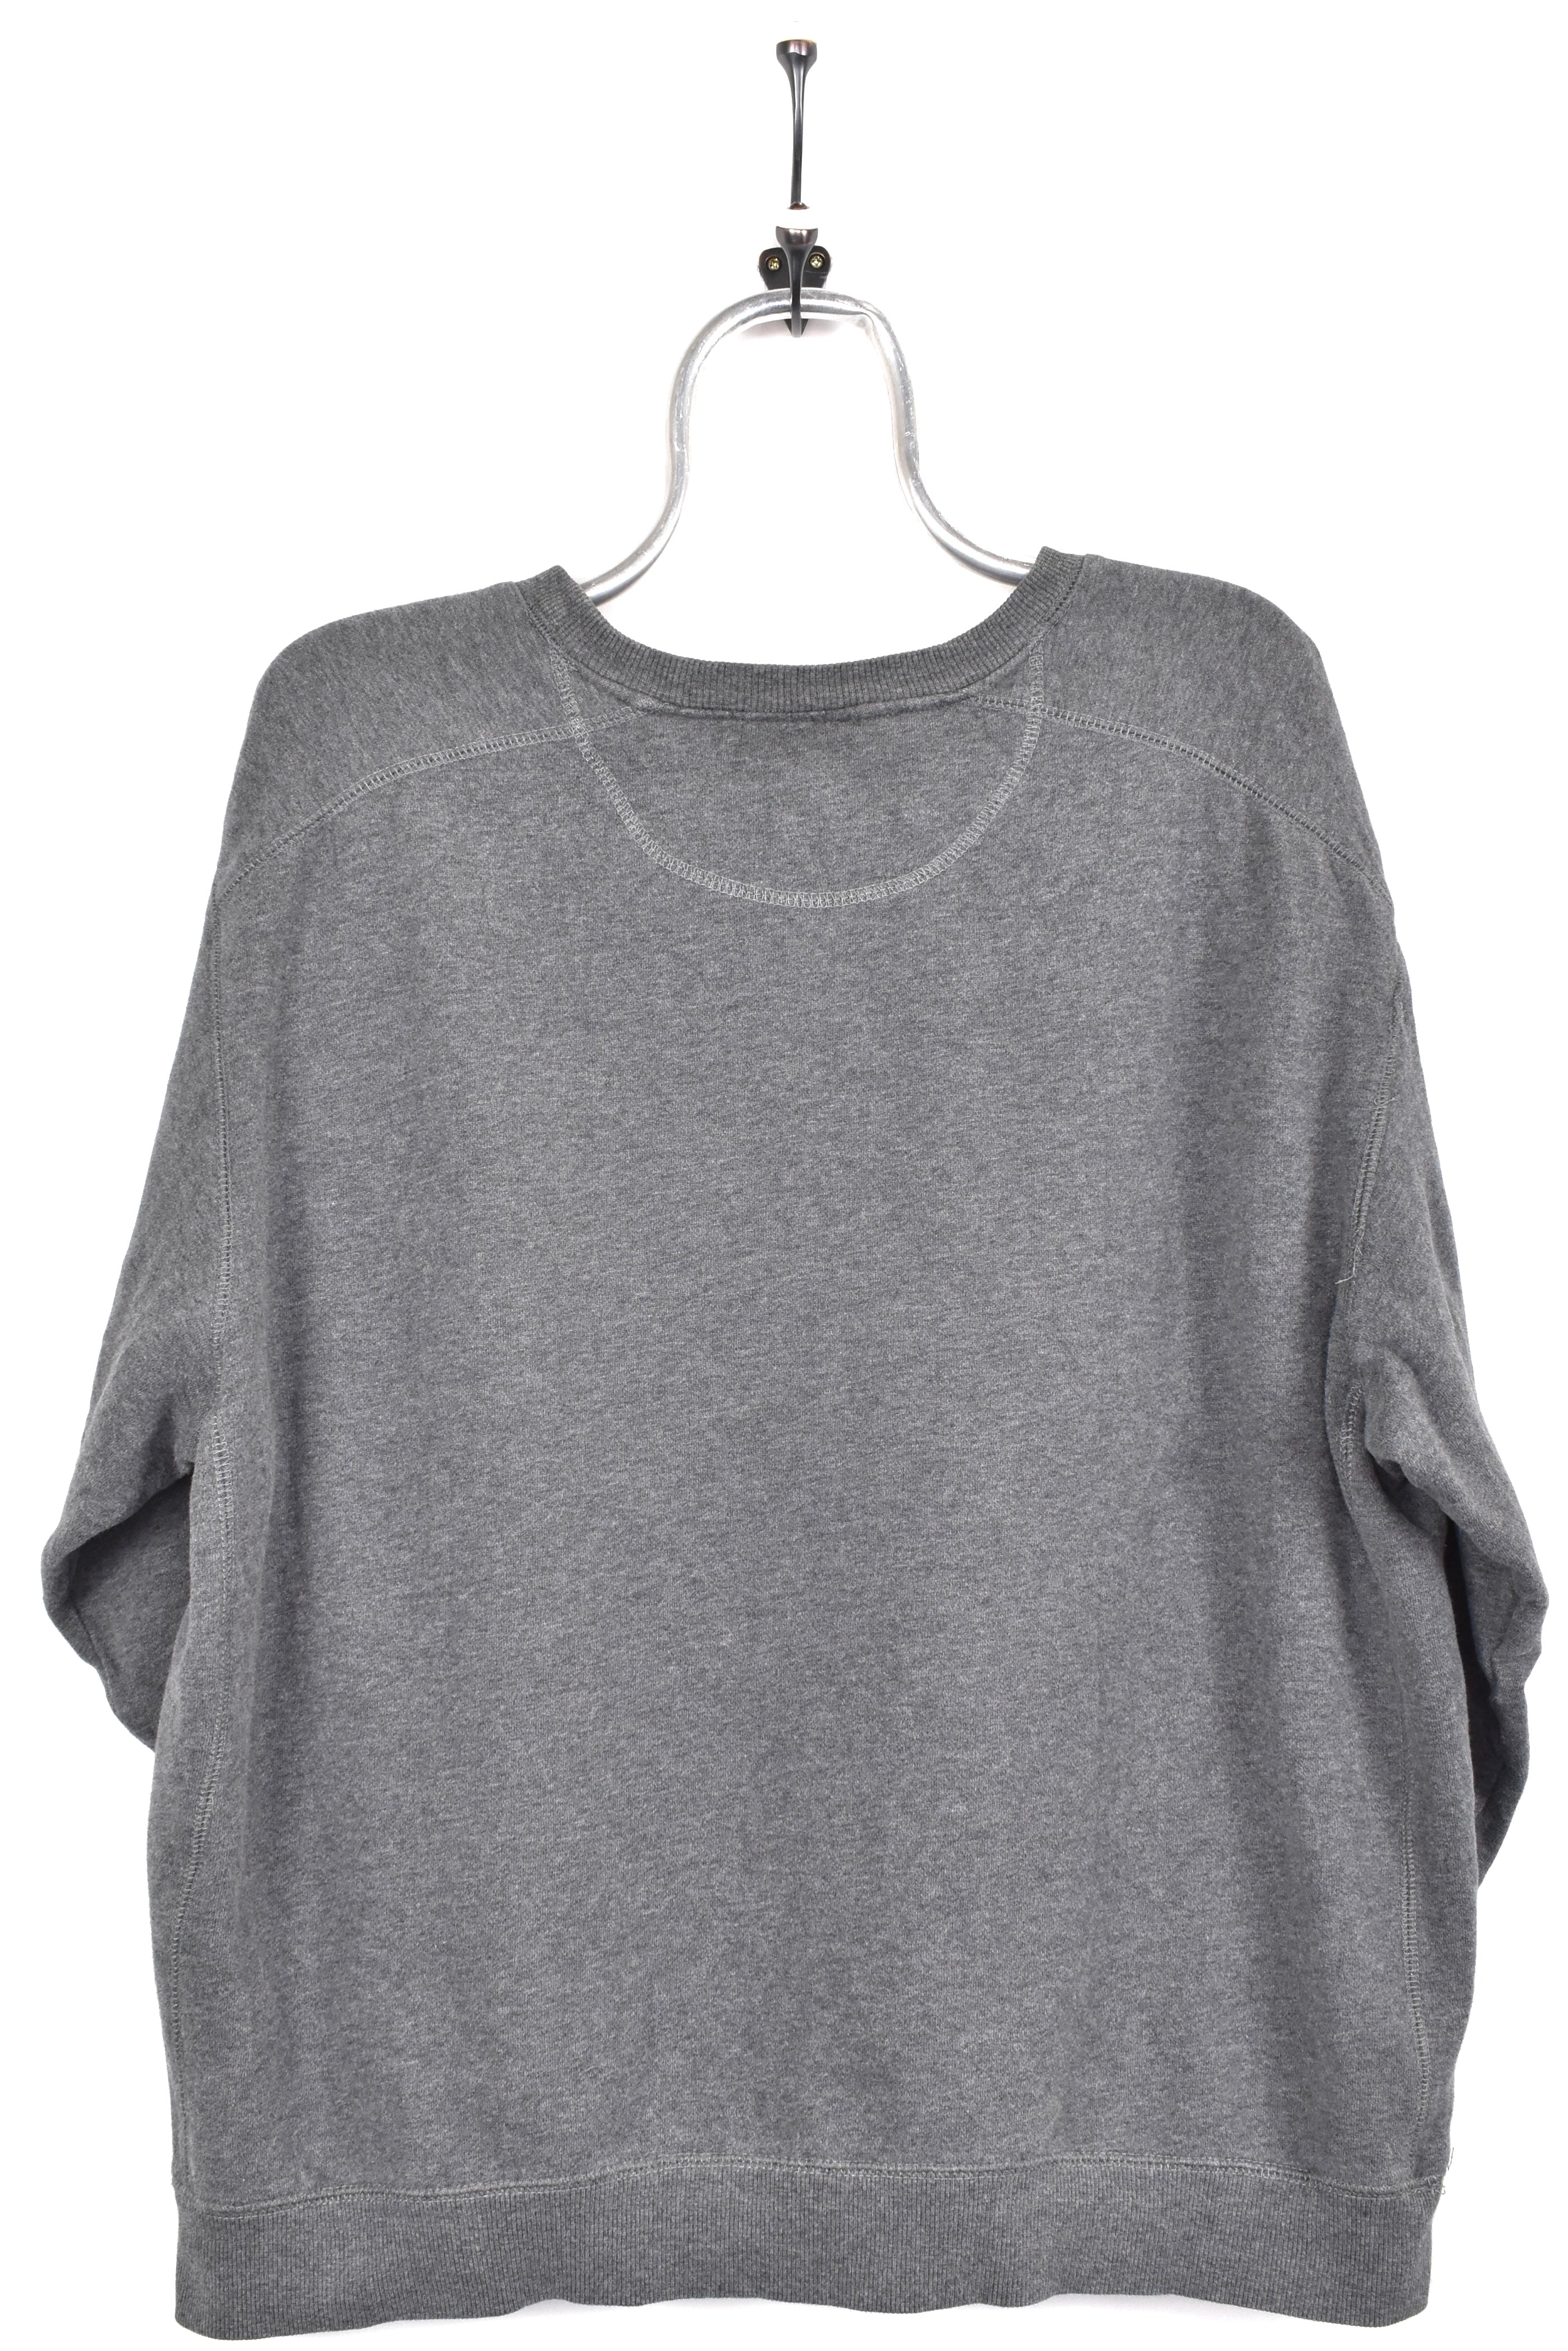 Vintage Starter sweatshirt, grey embroidered crewneck - AU XL STARTER